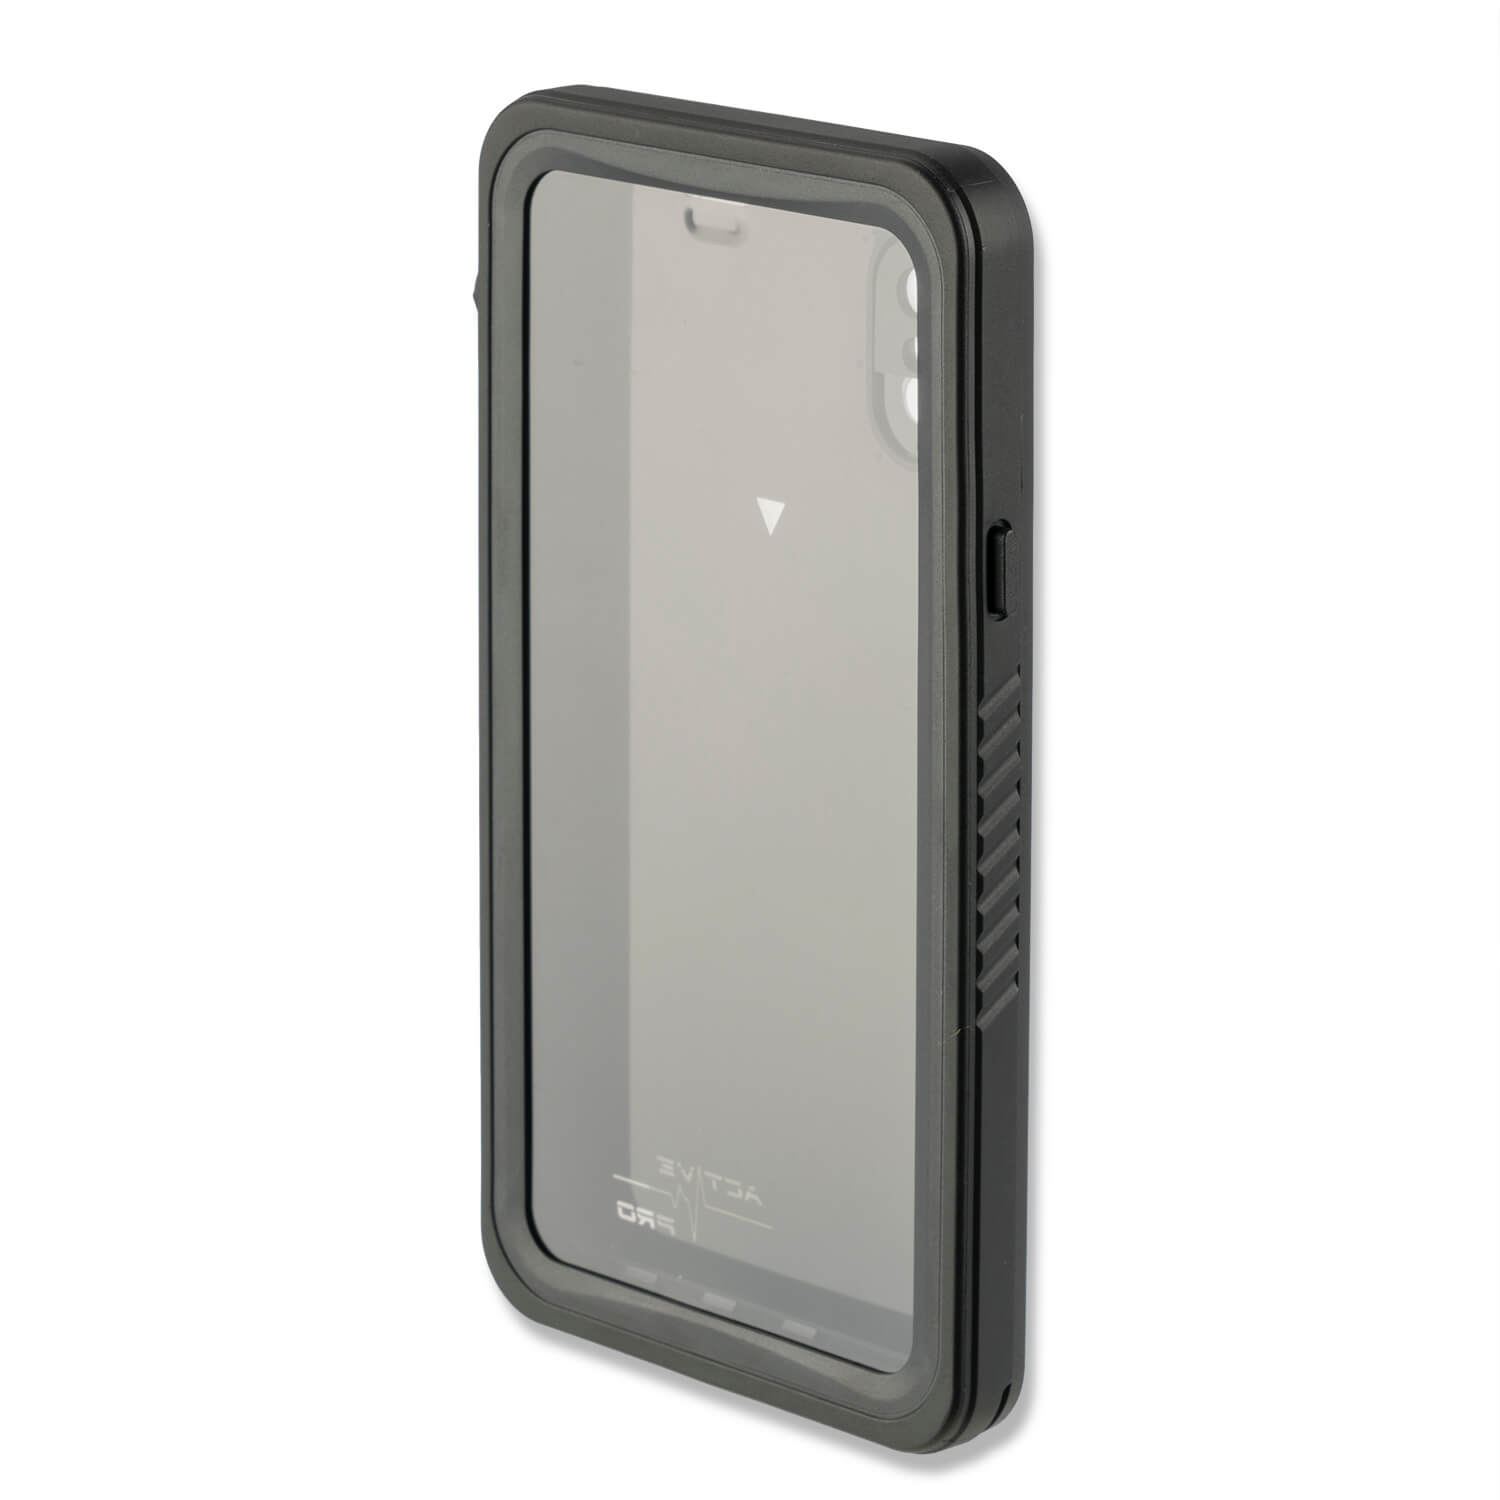 4smarts Waterproof Case Active Pro NAUTILUS - ударо и водоустойчив калъф за iPhone XS, iPhone X (черен)